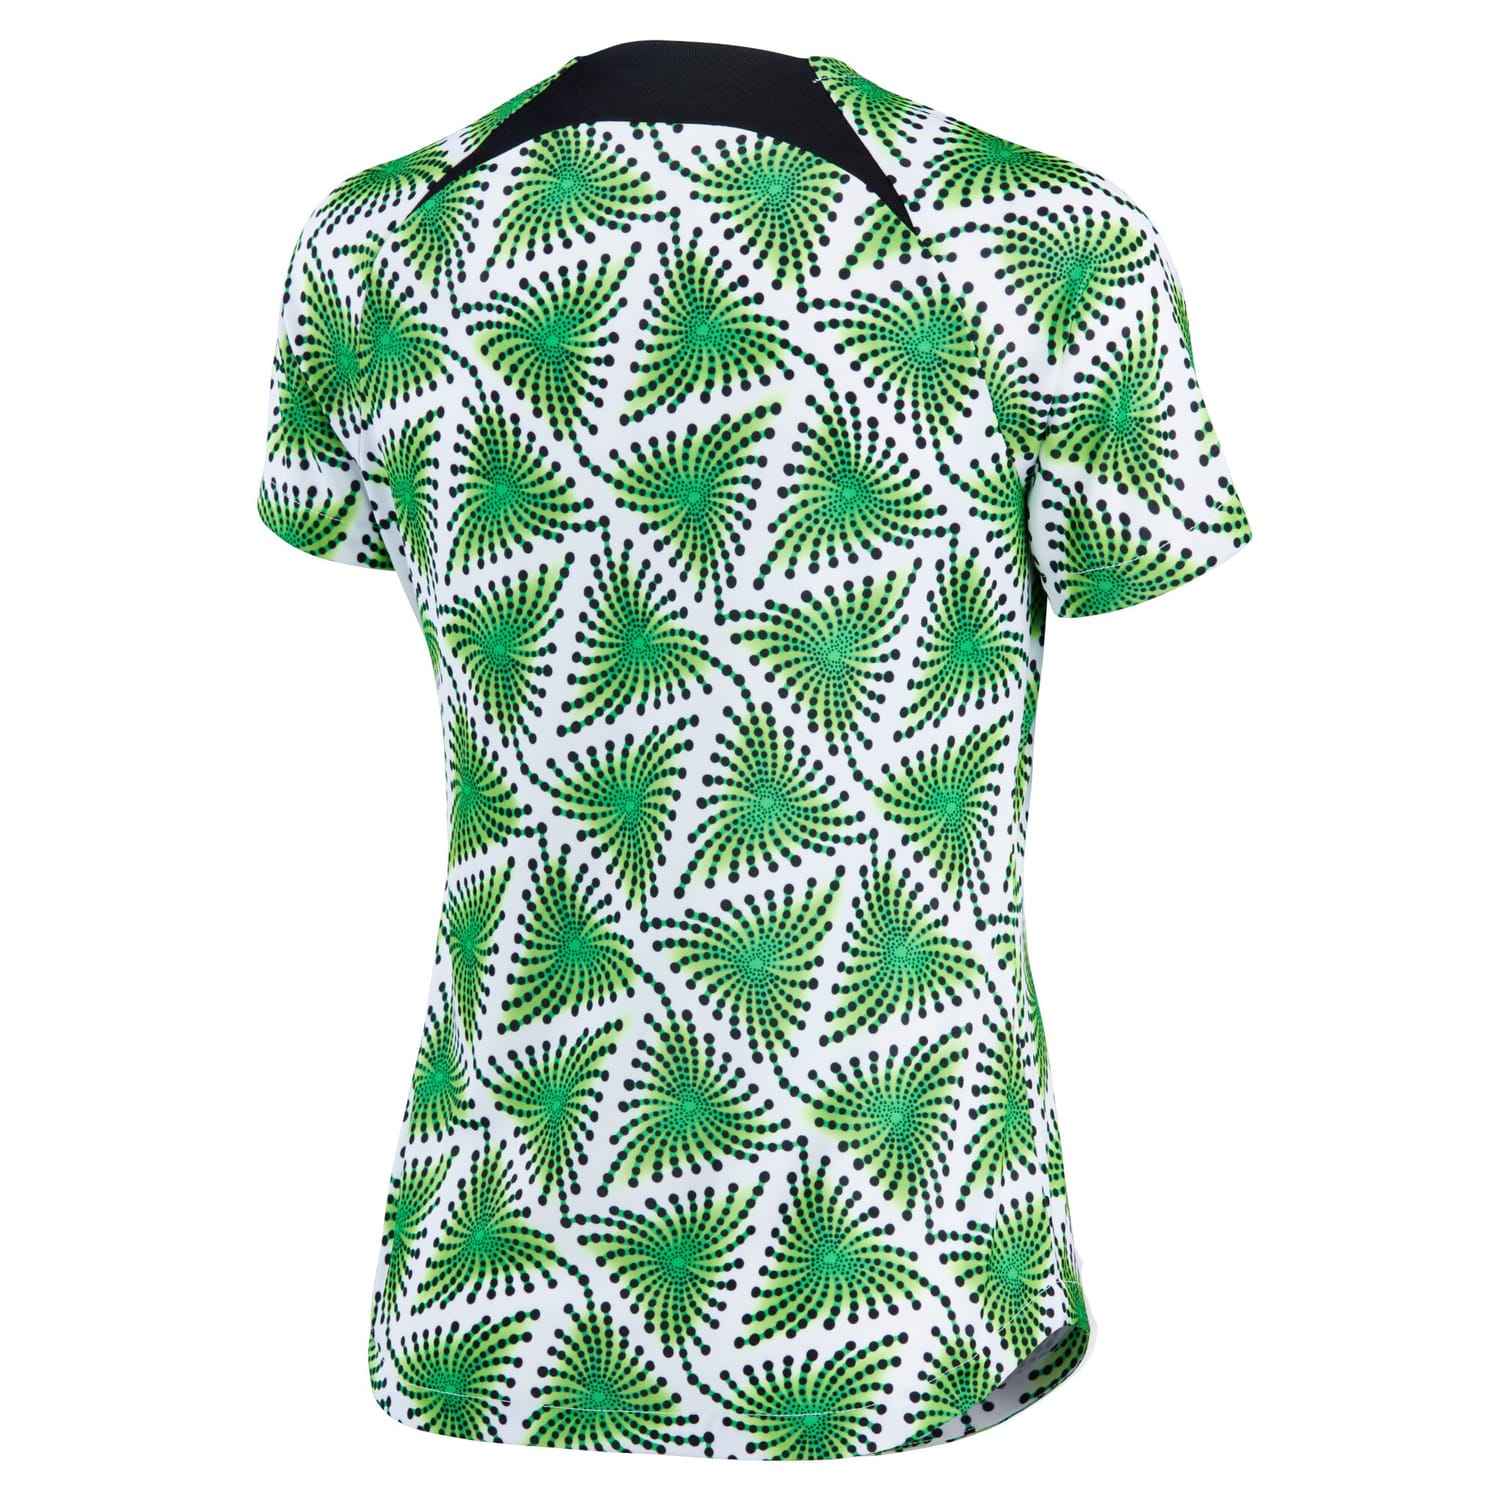 Nigeria National Team Pre-Match Jersey Shirt Green 2022 for Women